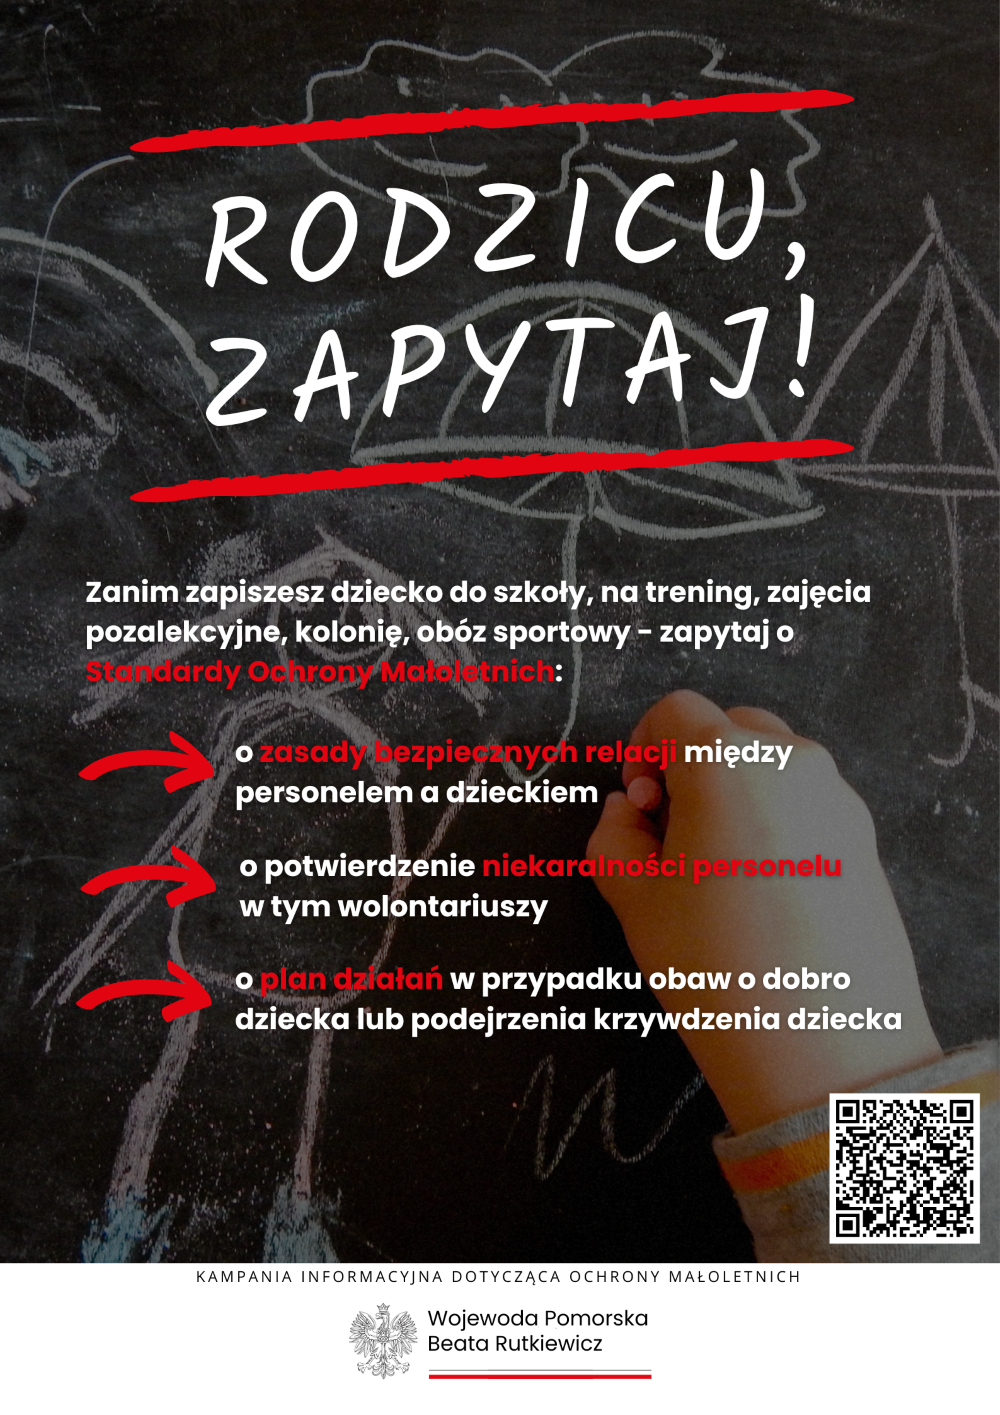 Grafika przedstawia plakat dotyczący kampanii informacyjnej na temat ochrony małoletnich dzieci